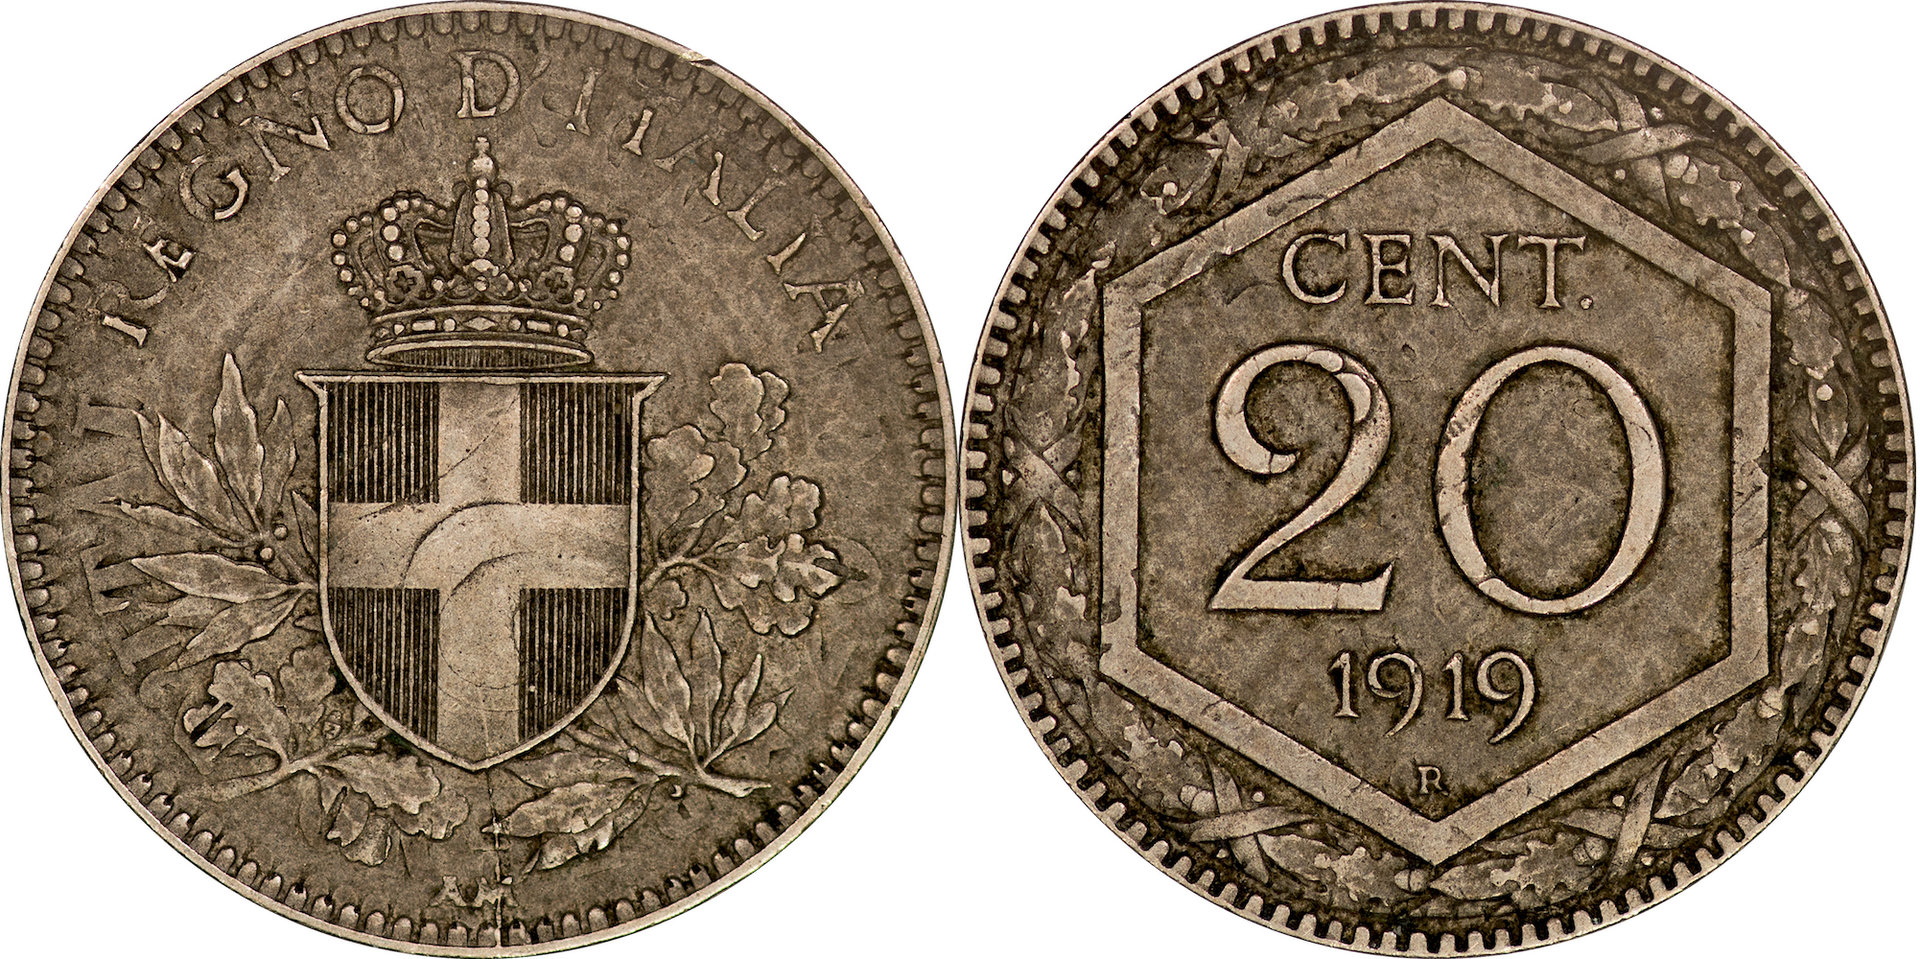 Italy - 1919 20 Centesimi.jpg